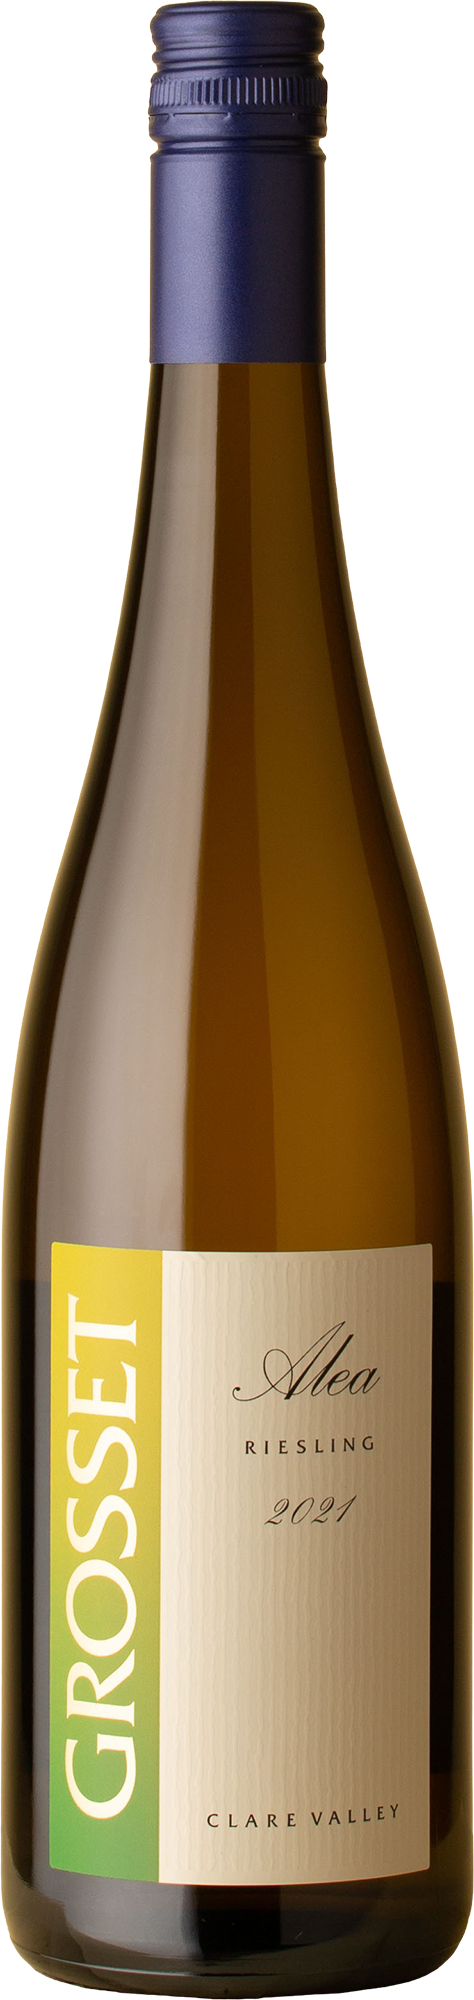 Grosset - Alea Riesling 2021 White Wine